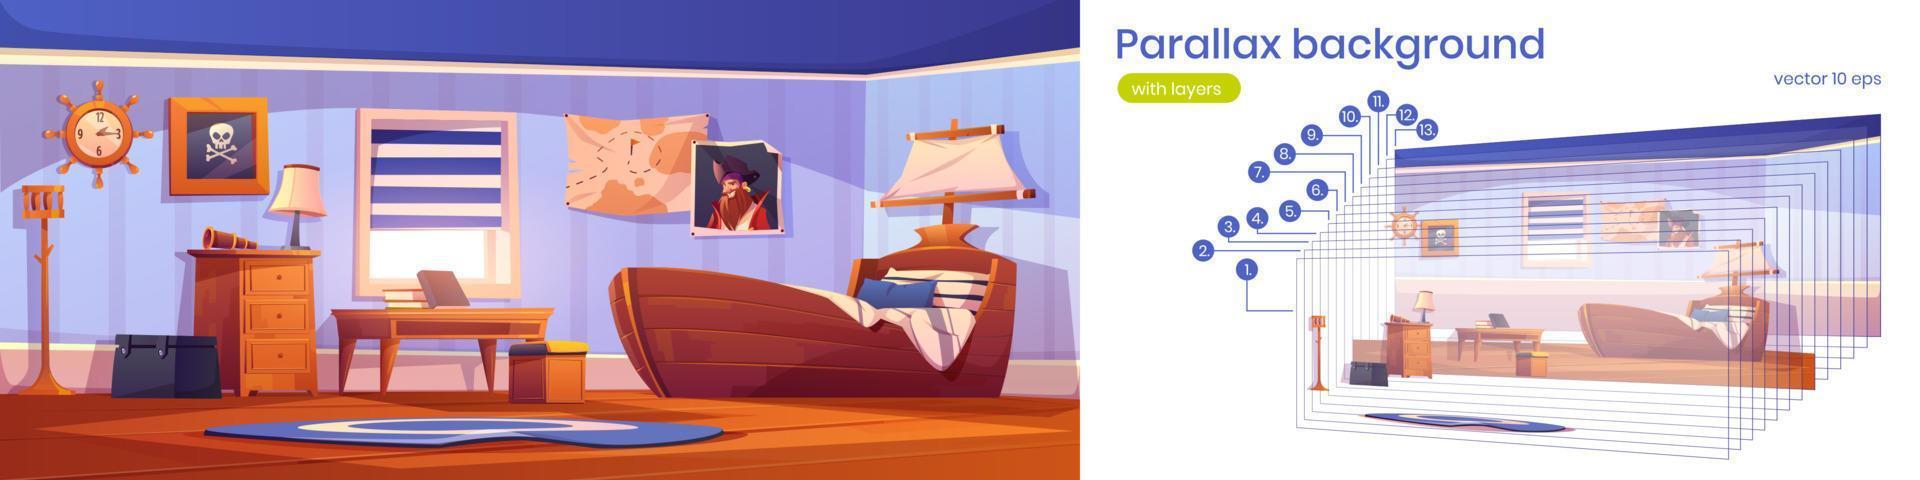 parallax achtergrond met slaapkamer in piraat stijl vector